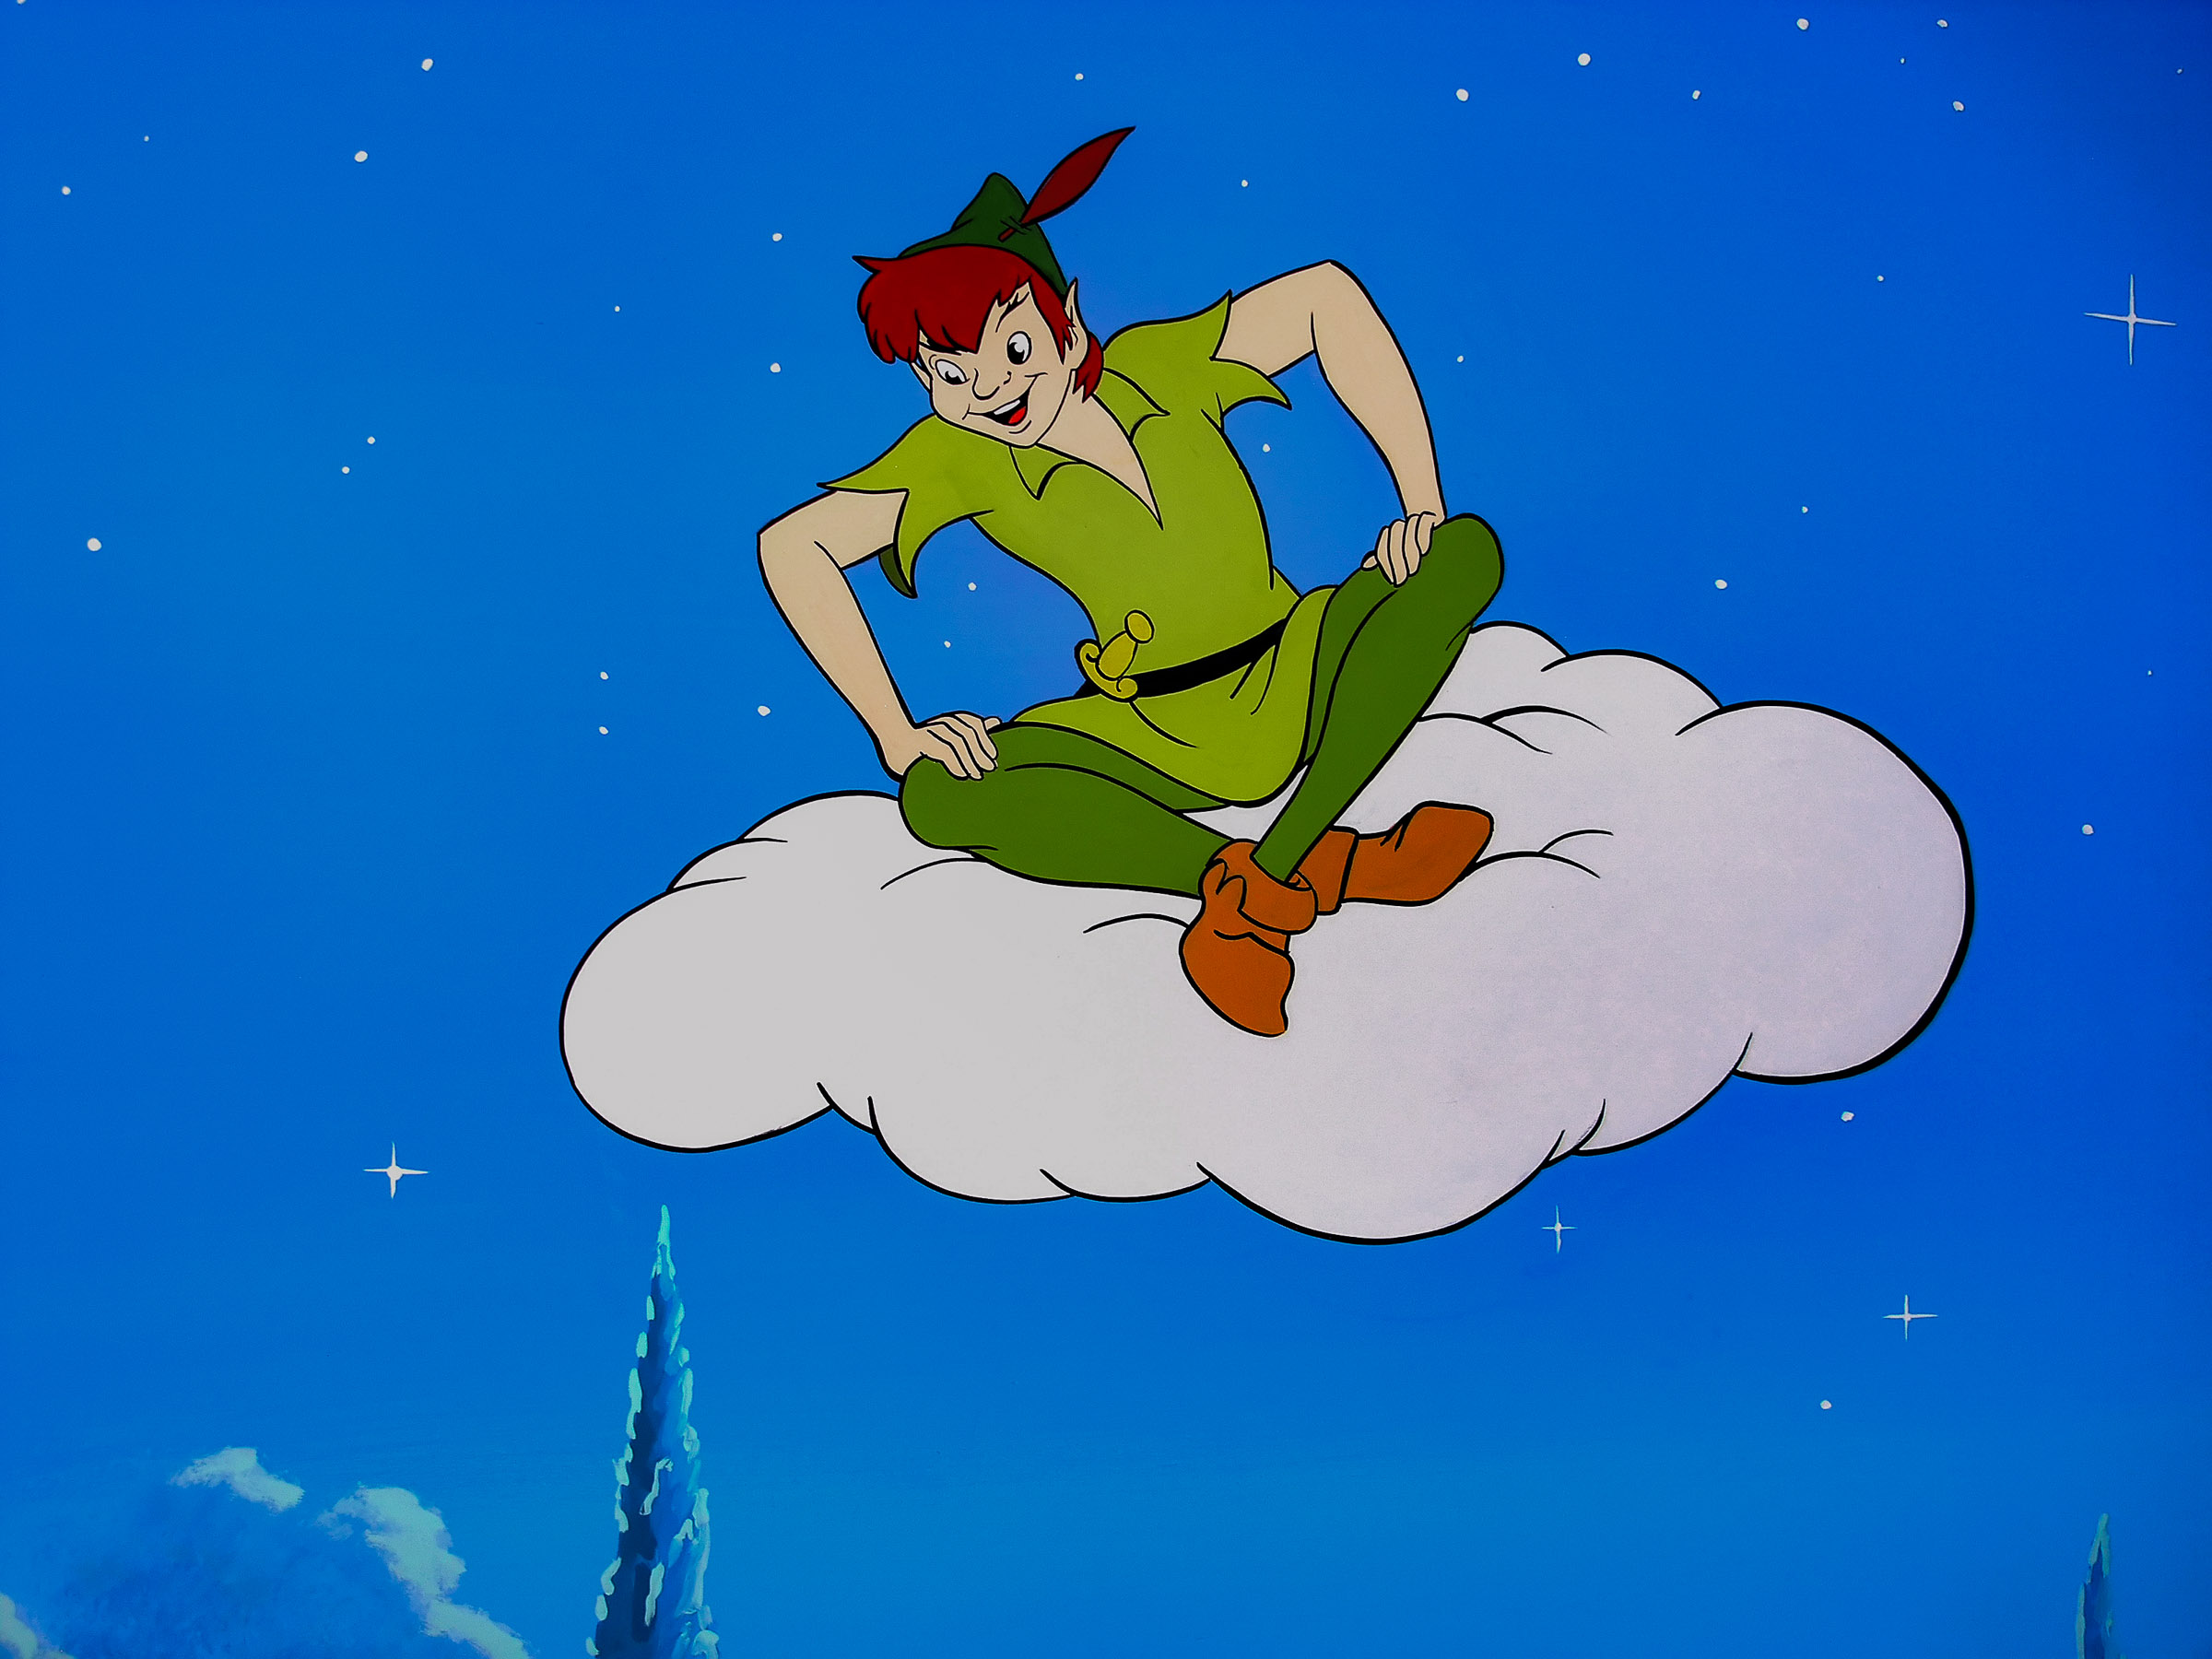 Peter Pan on cloud